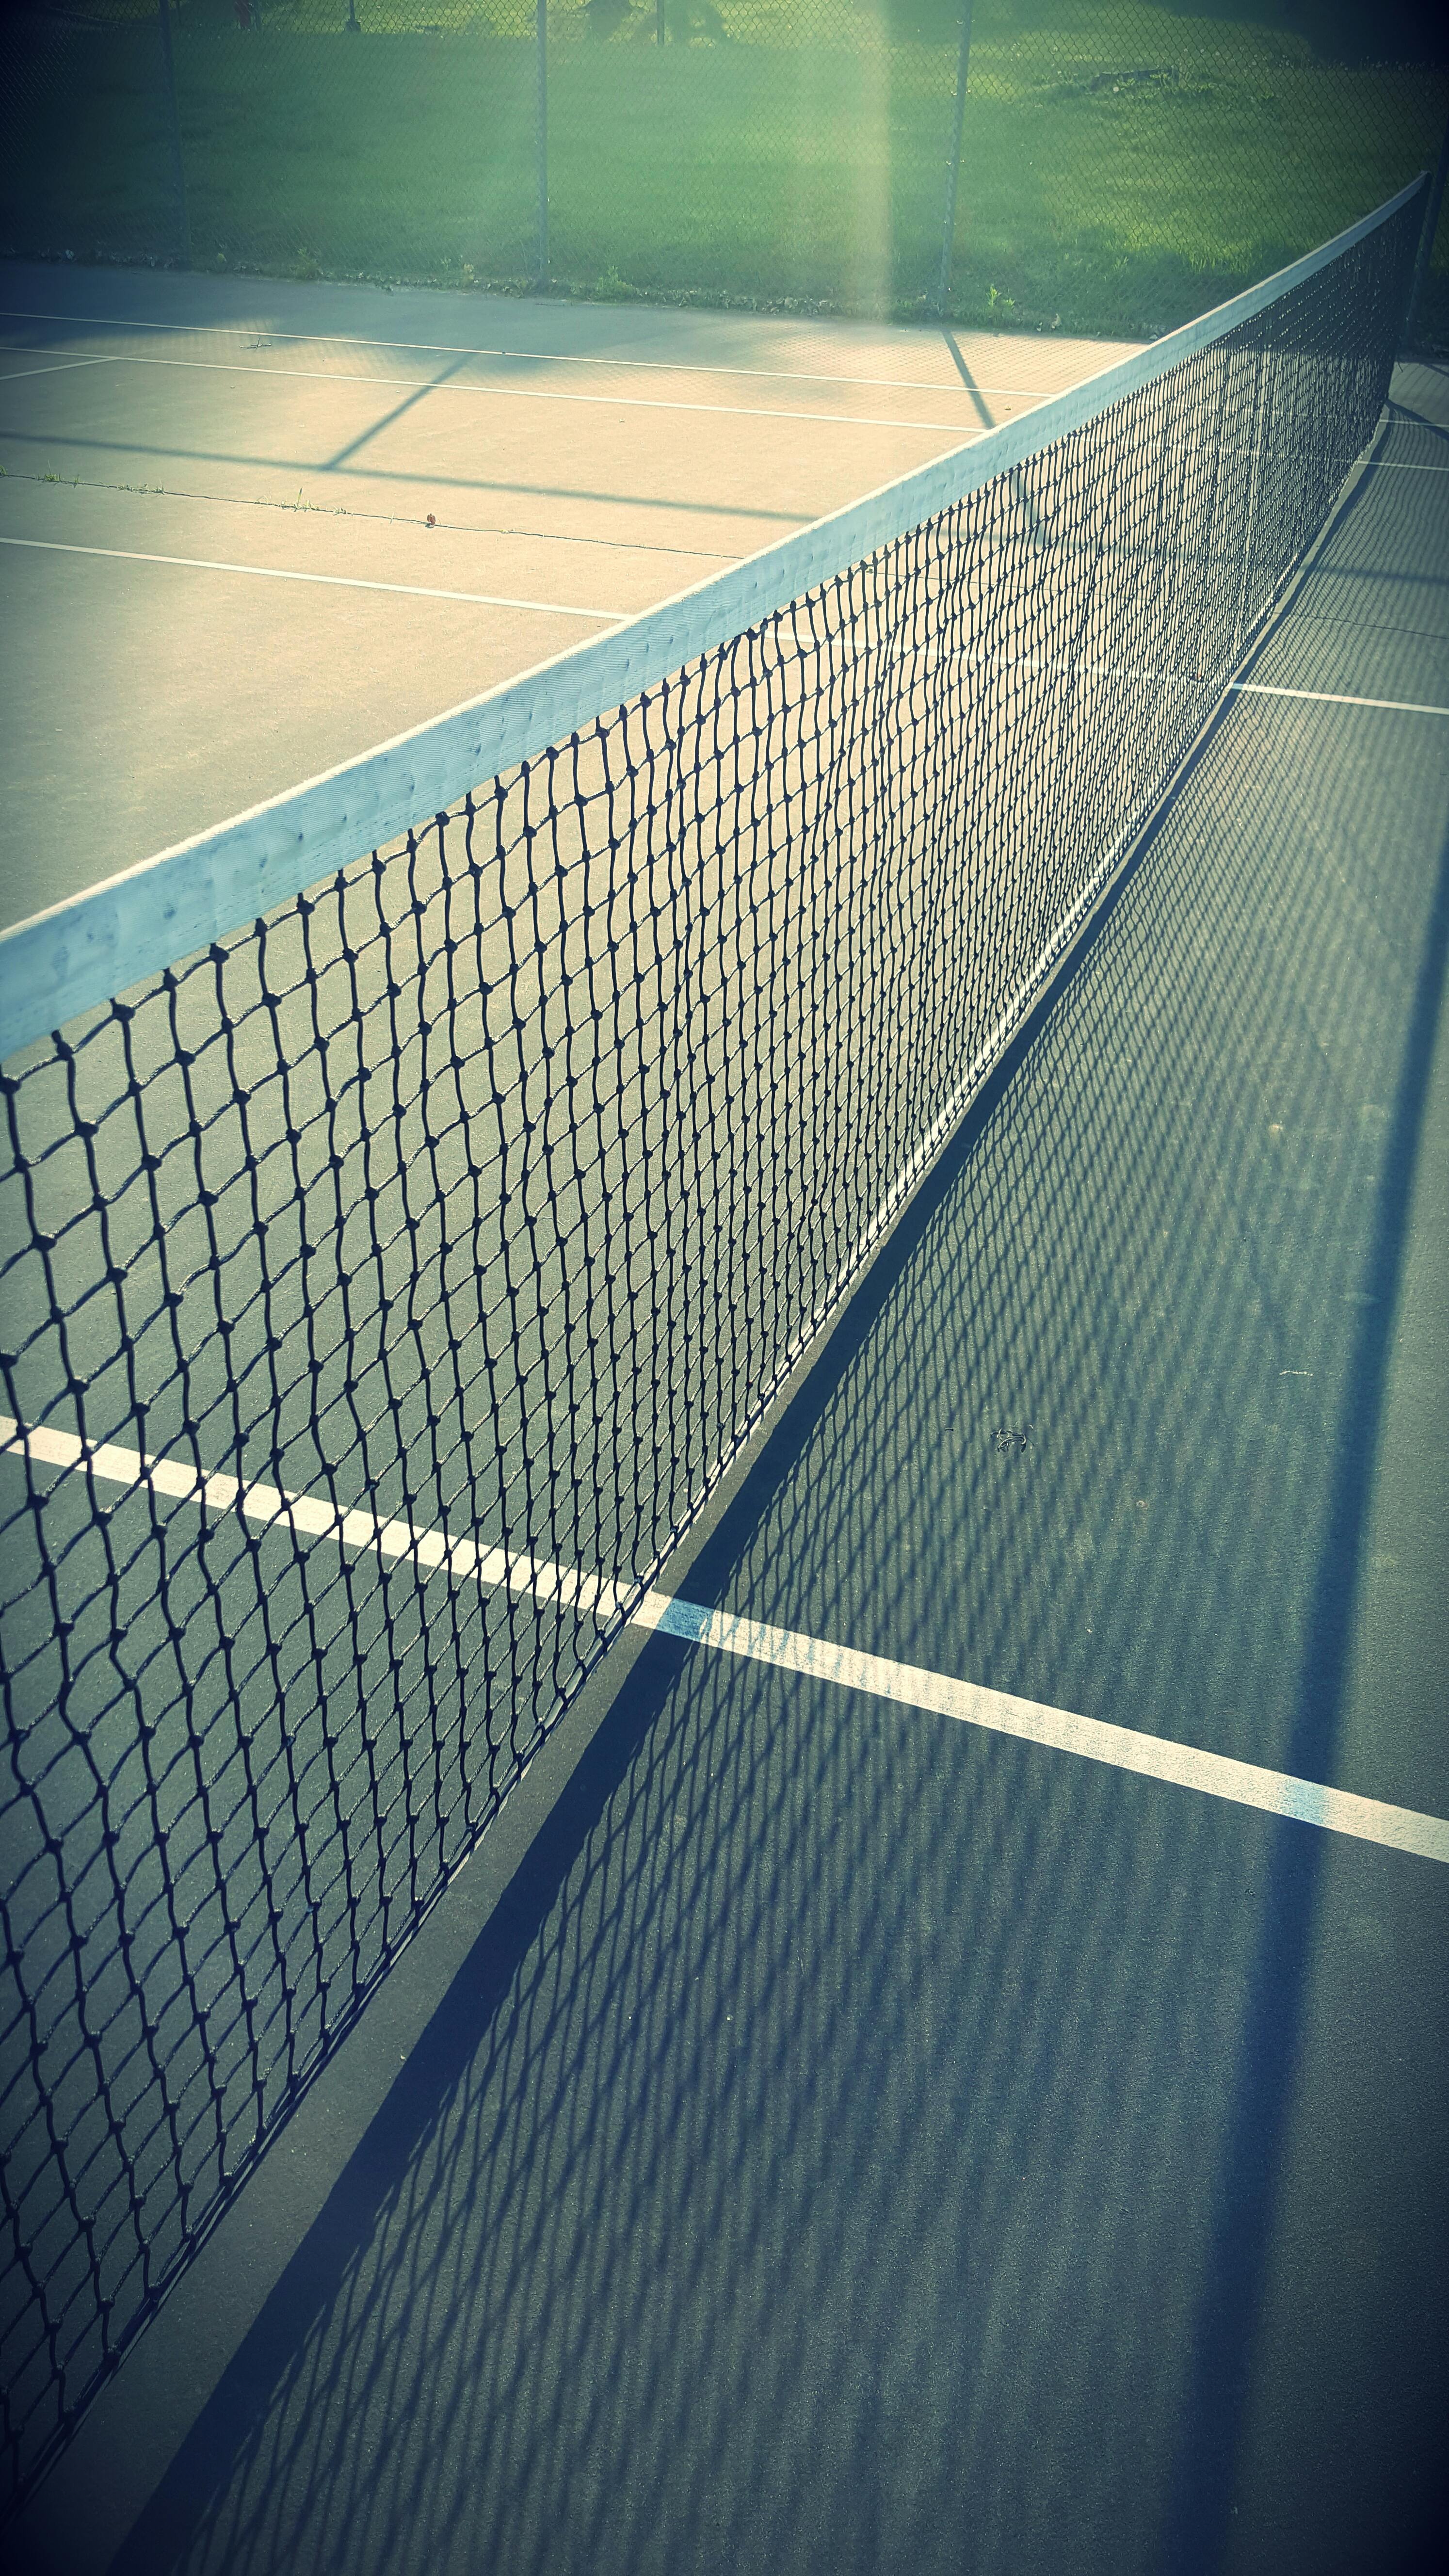 White Tennis Net On A Ground Free Stock Photo